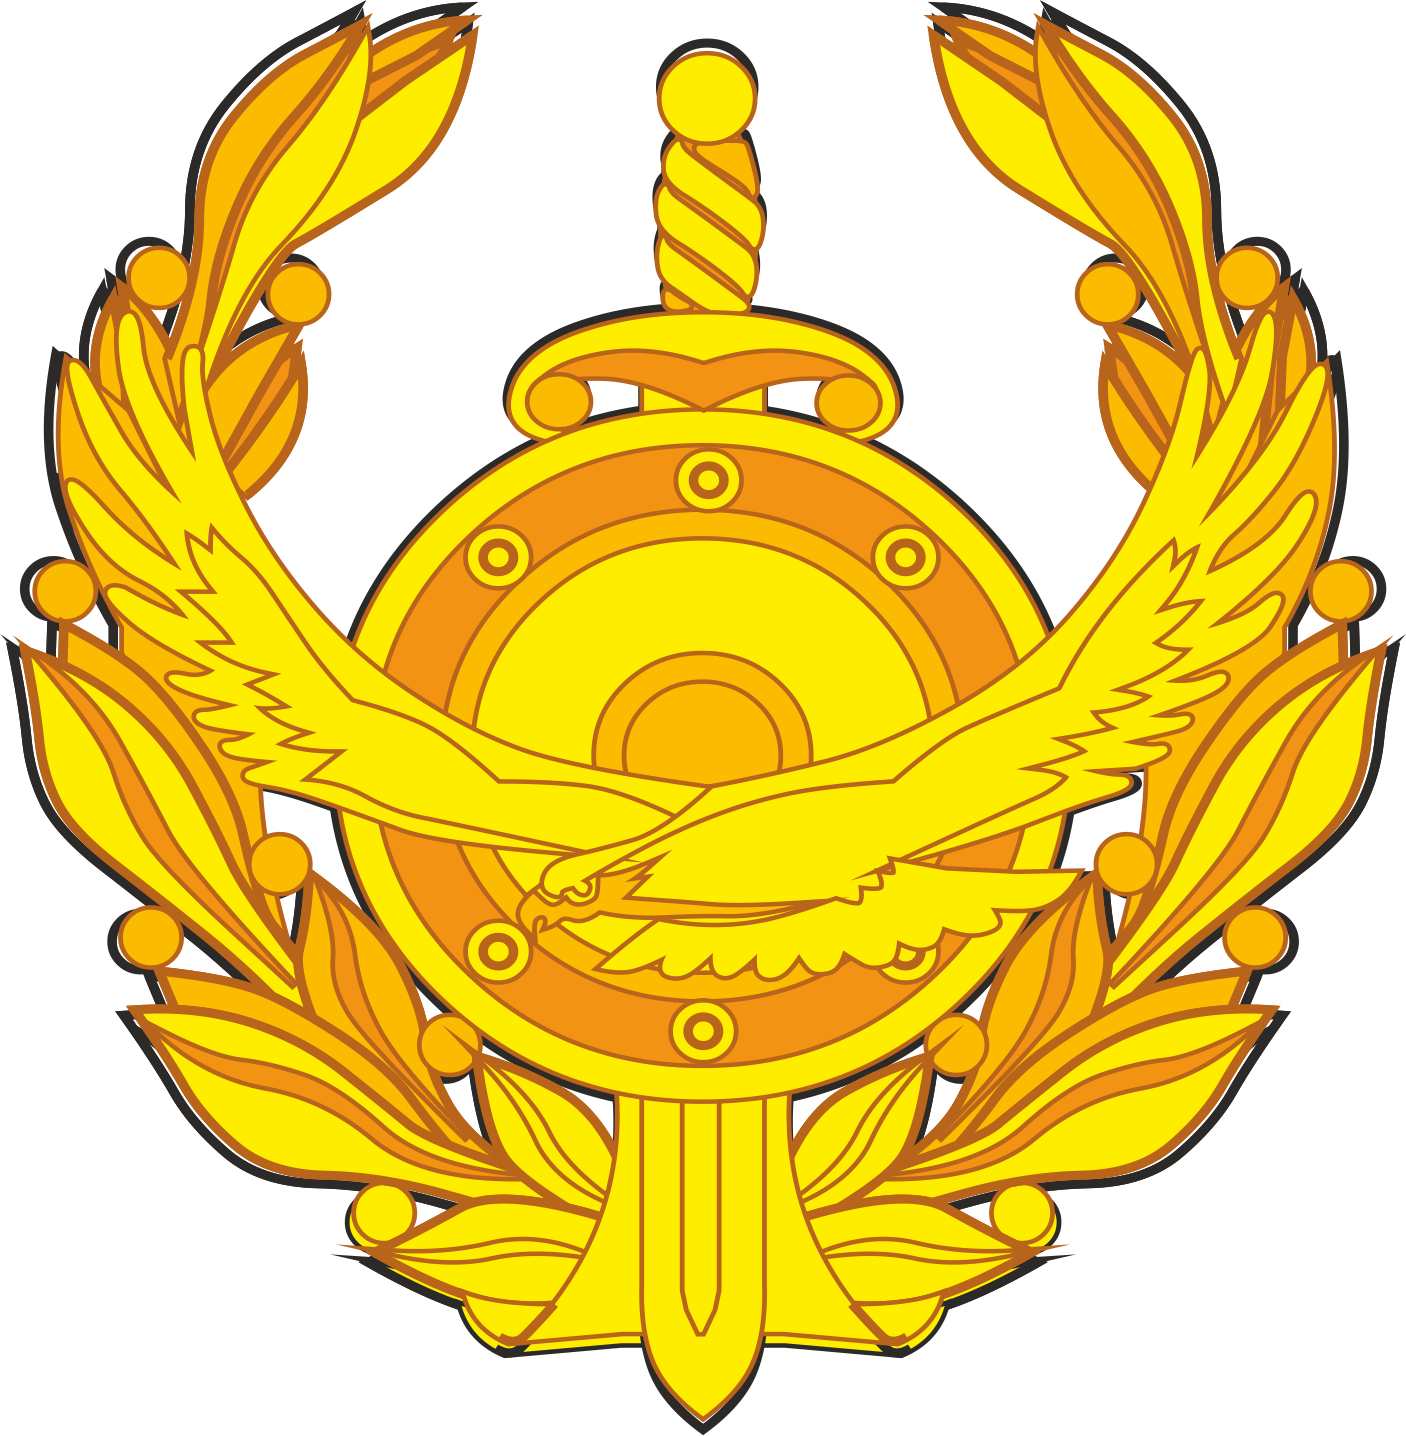 ҚР ІІМ логотипі